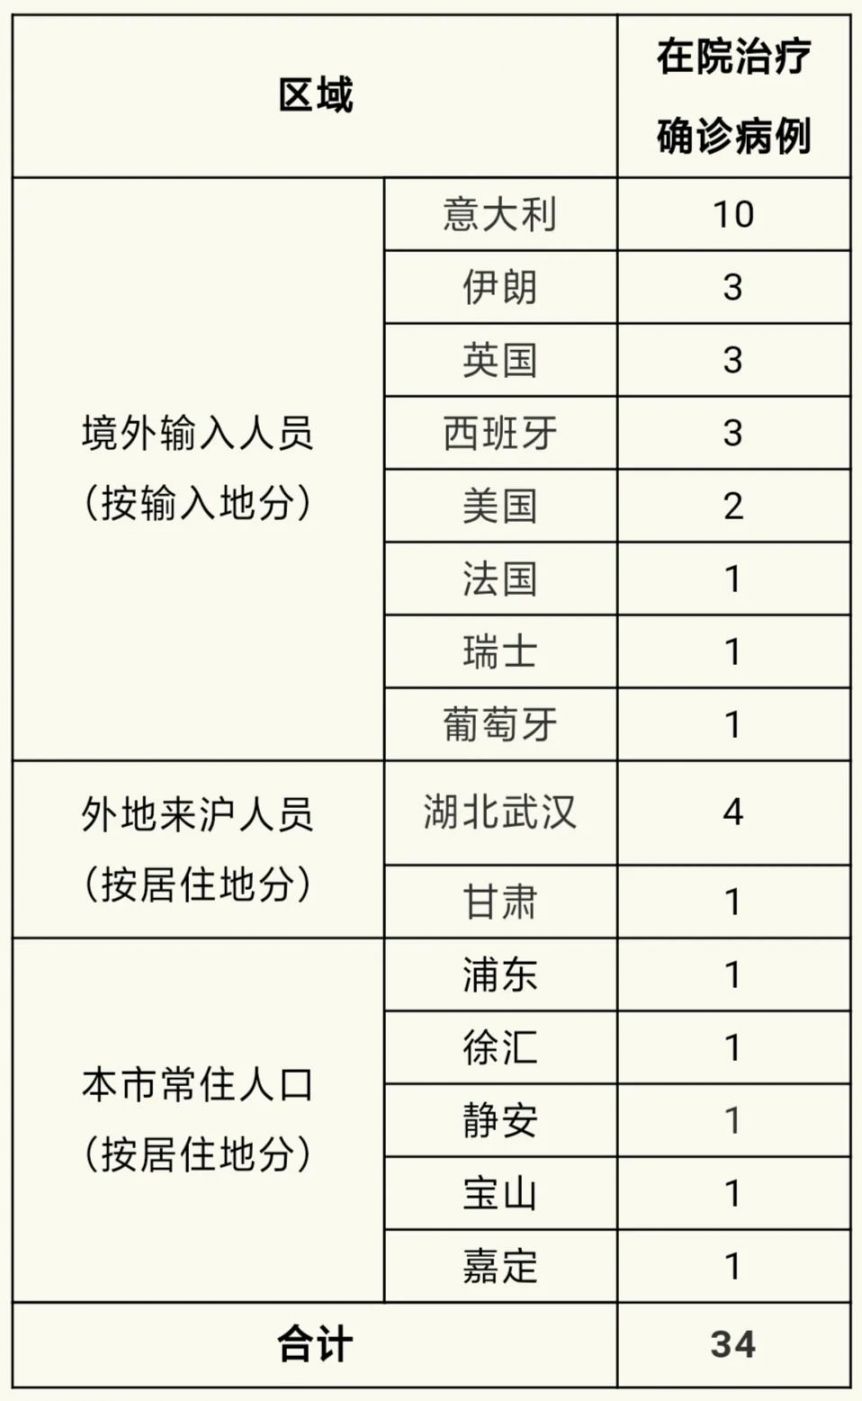 3月18日上海新增2例境外输确诊病例 治愈出院1例